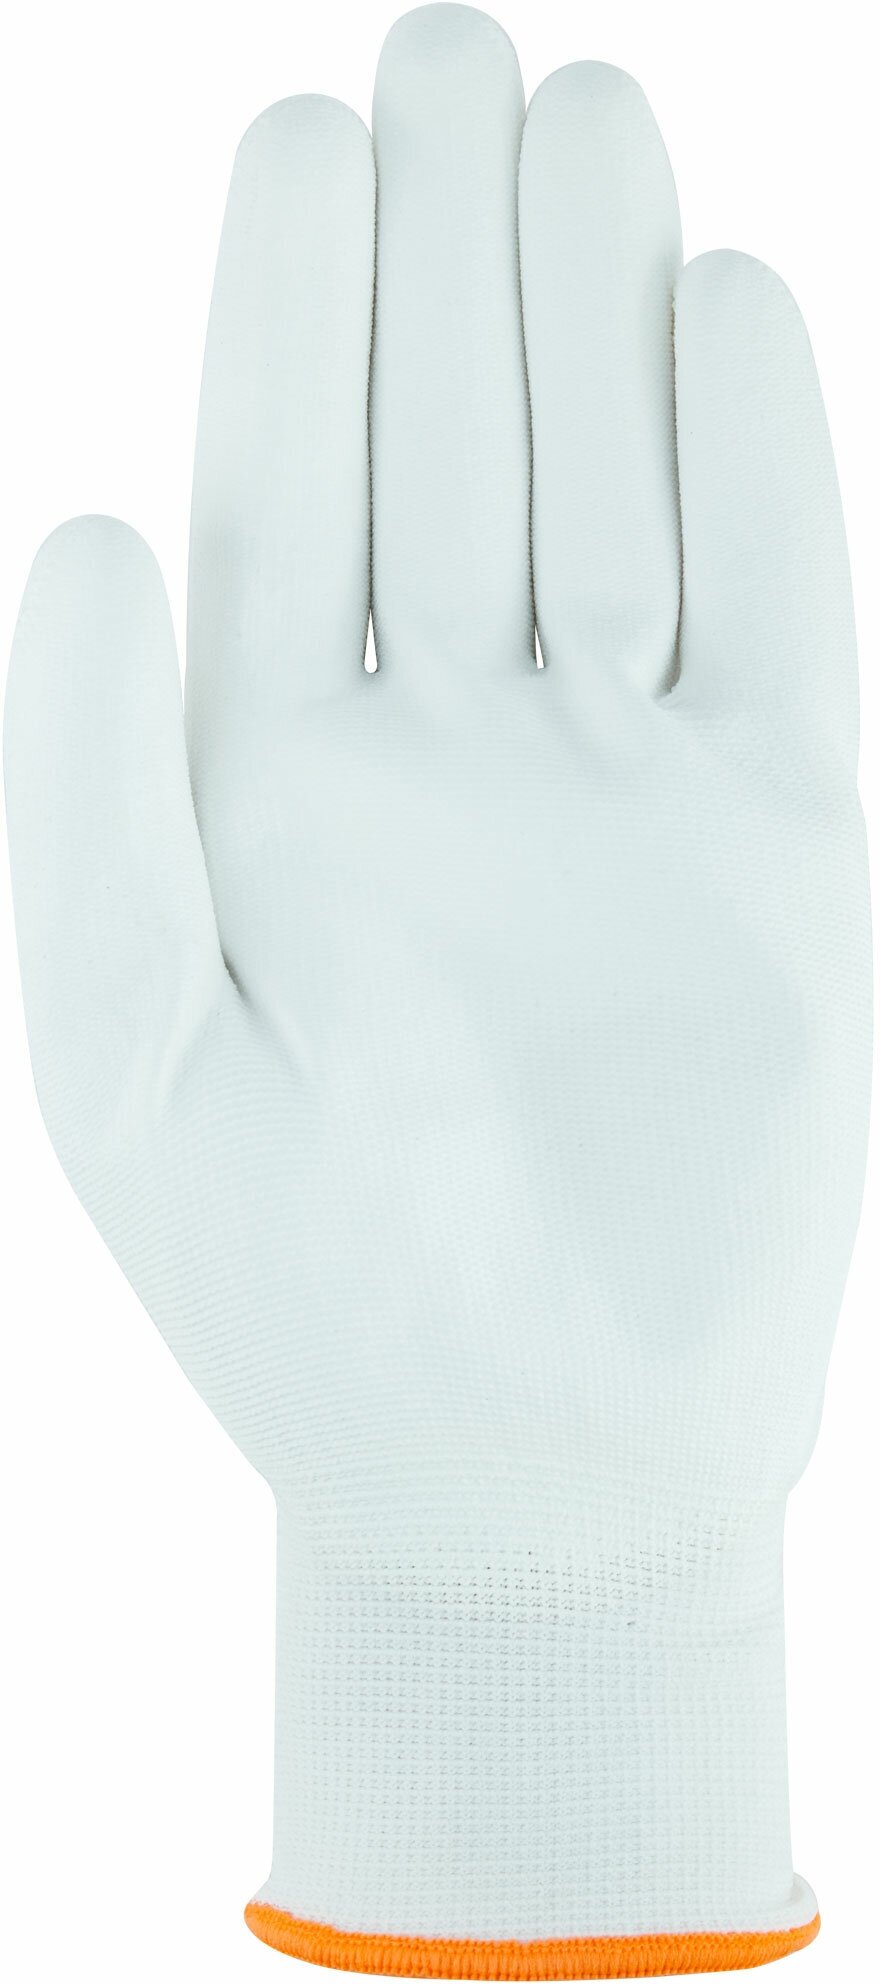 Перчатки белые, полиэстер с обливкой из полиуретана ( водоотталкивающие), р-р XL/10